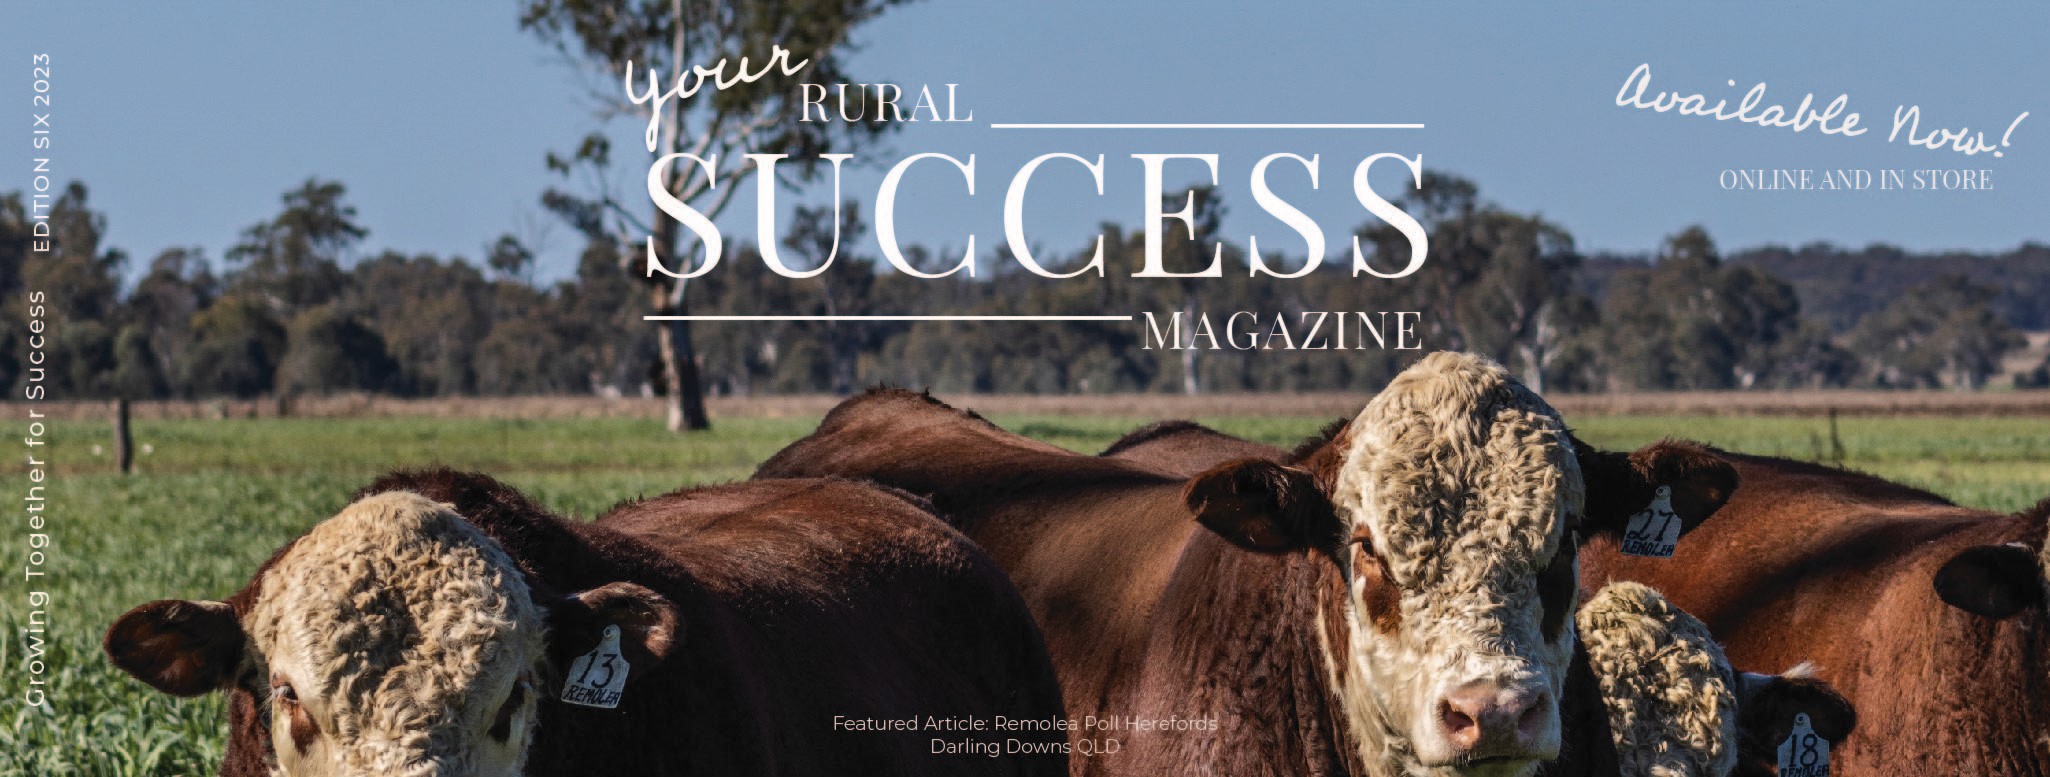 Your Rural Success Magazine